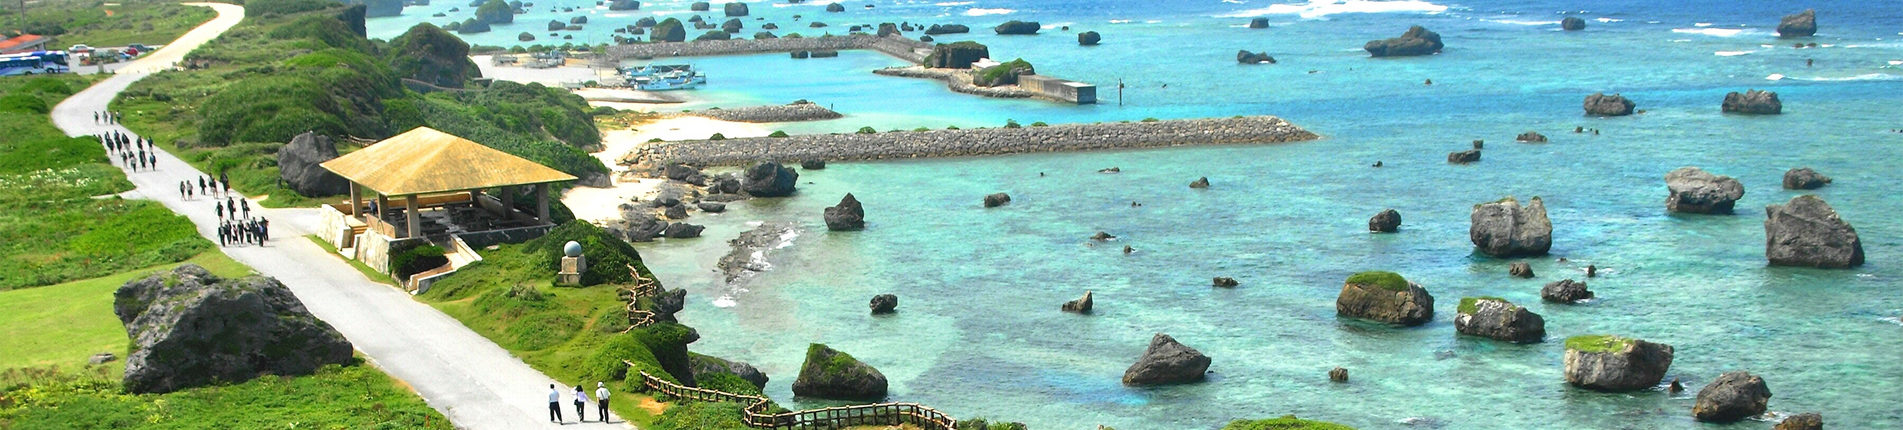 Miyako-jima